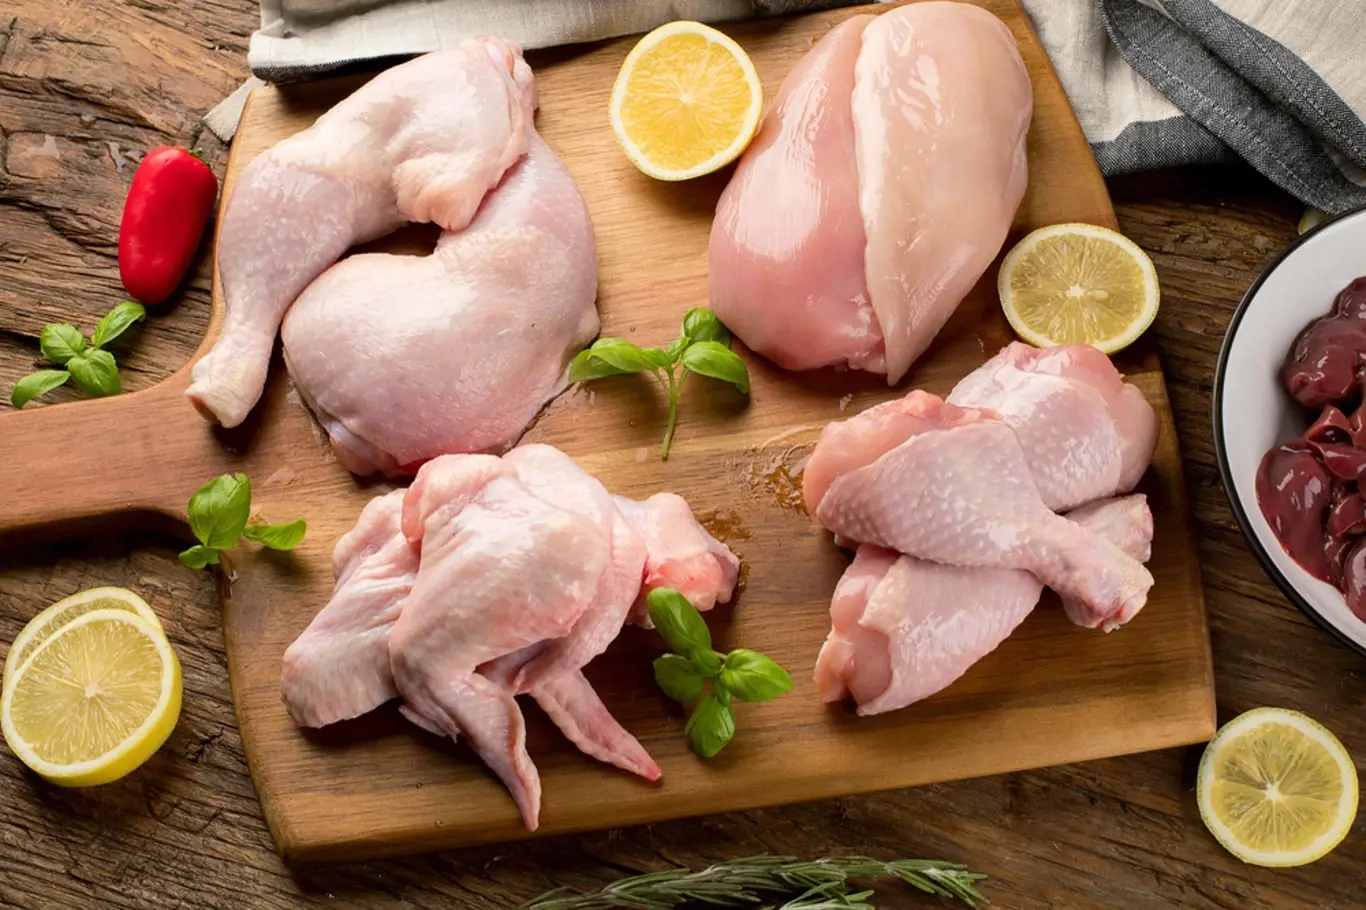 Kuřecí maso je nutné dobře tepelně zpracovat, jinak je možná nákaza salmonelou.